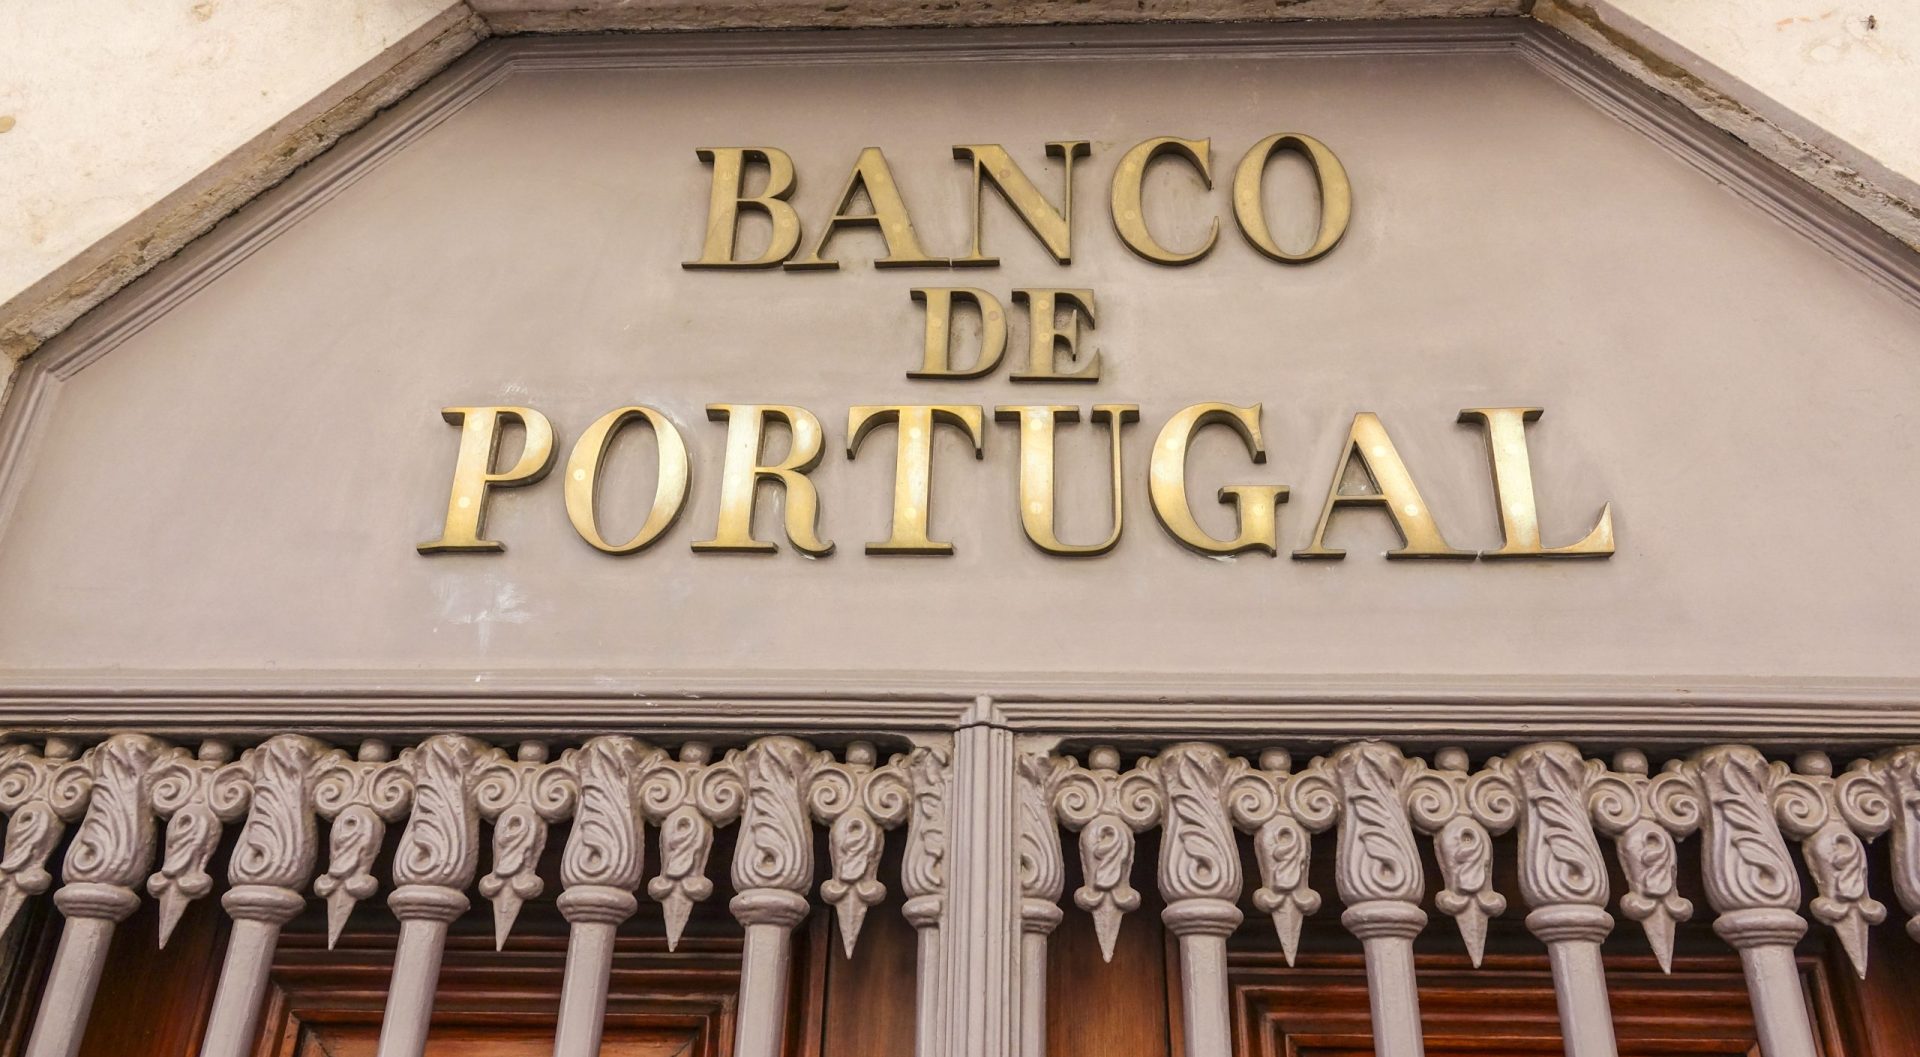 Banco de Portugal. Portugueses fazem 1137 queixas por mês